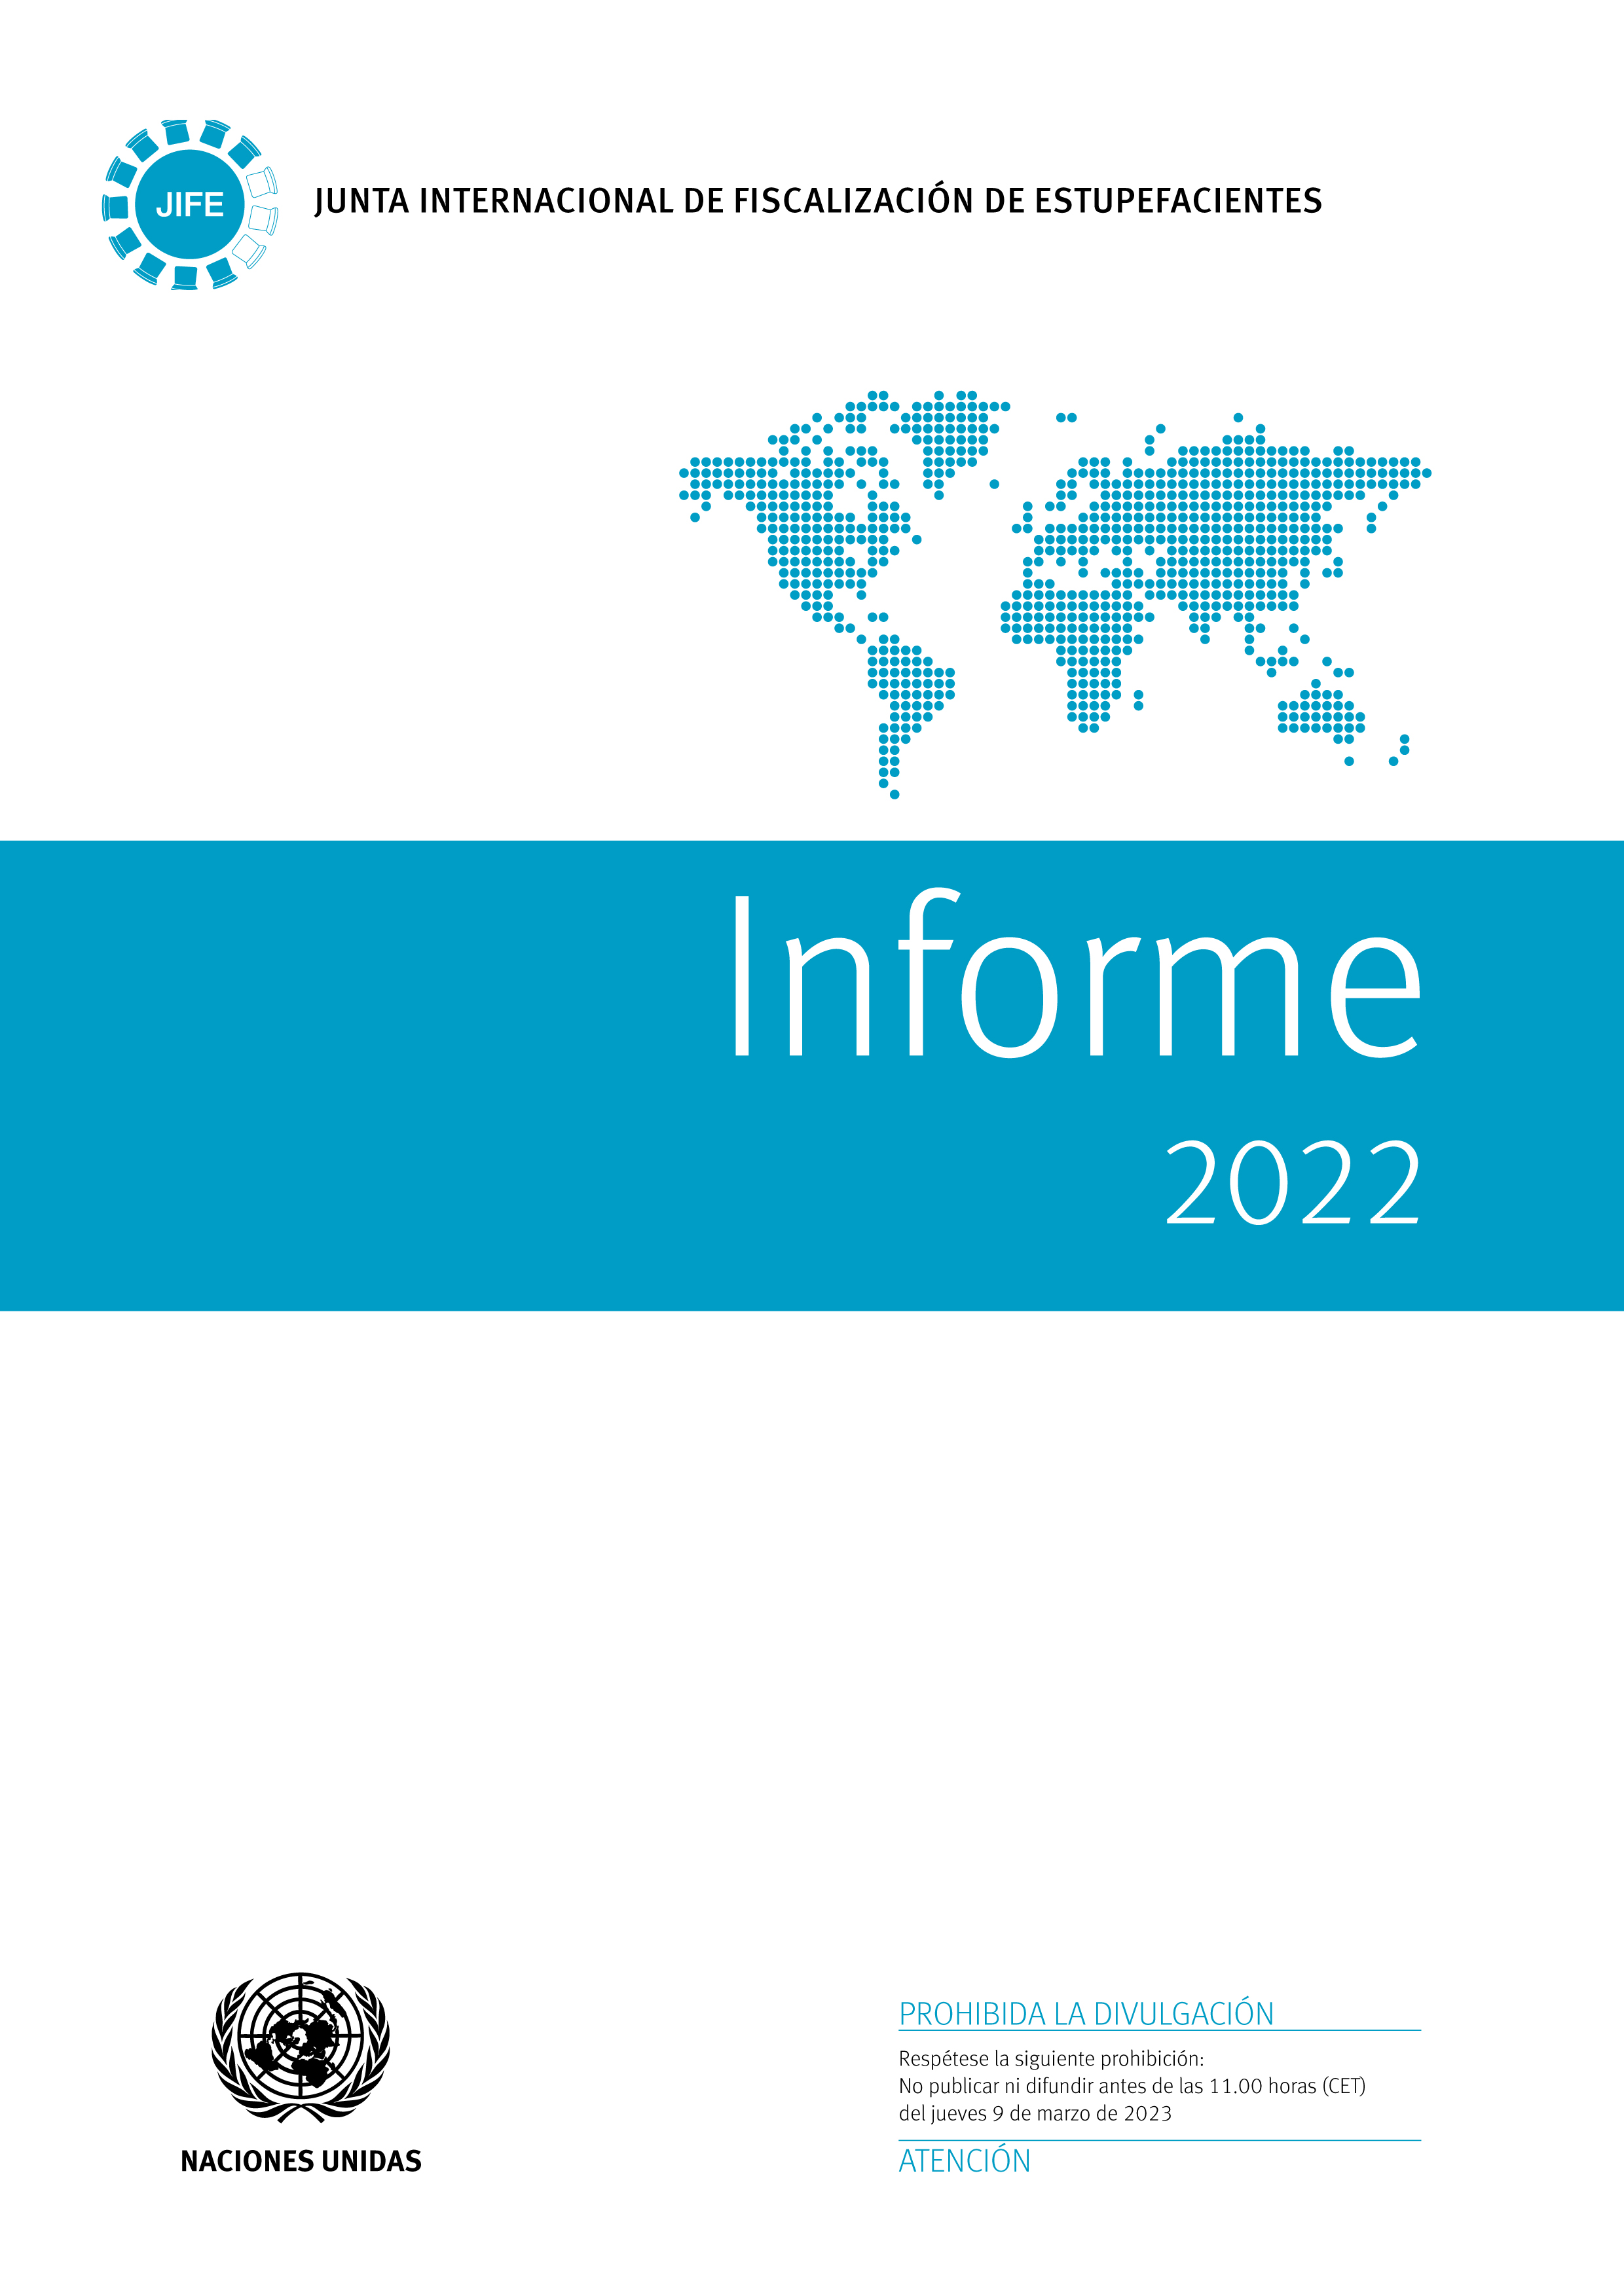 image of Informe de la Junta Internacional de Fiscalización de Estupefacientes correspondiente a 2022